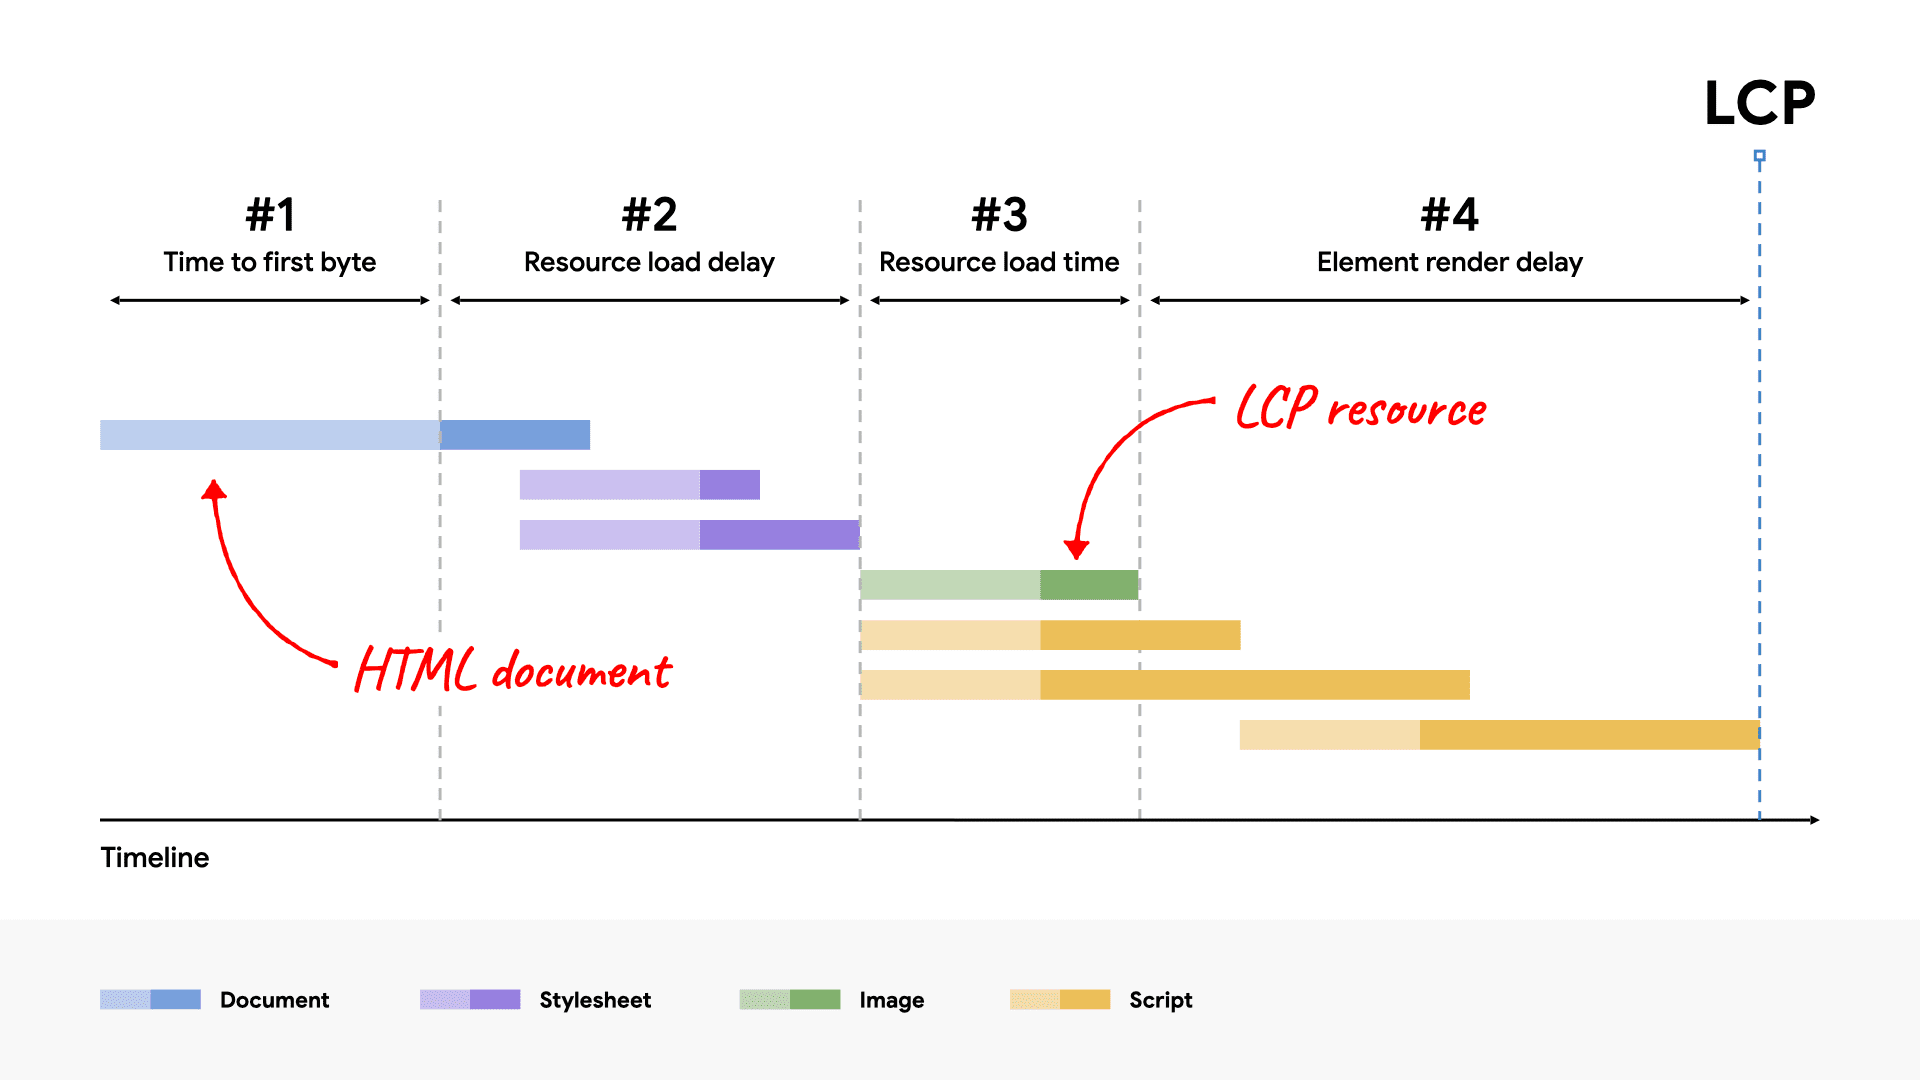 Ten sam rozkład LCP przedstawiony wcześniej, gdzie podkategoria czasu wczytywania zasobów jest krótsza, ale ogólny czas LCP pozostaje bez zmian.